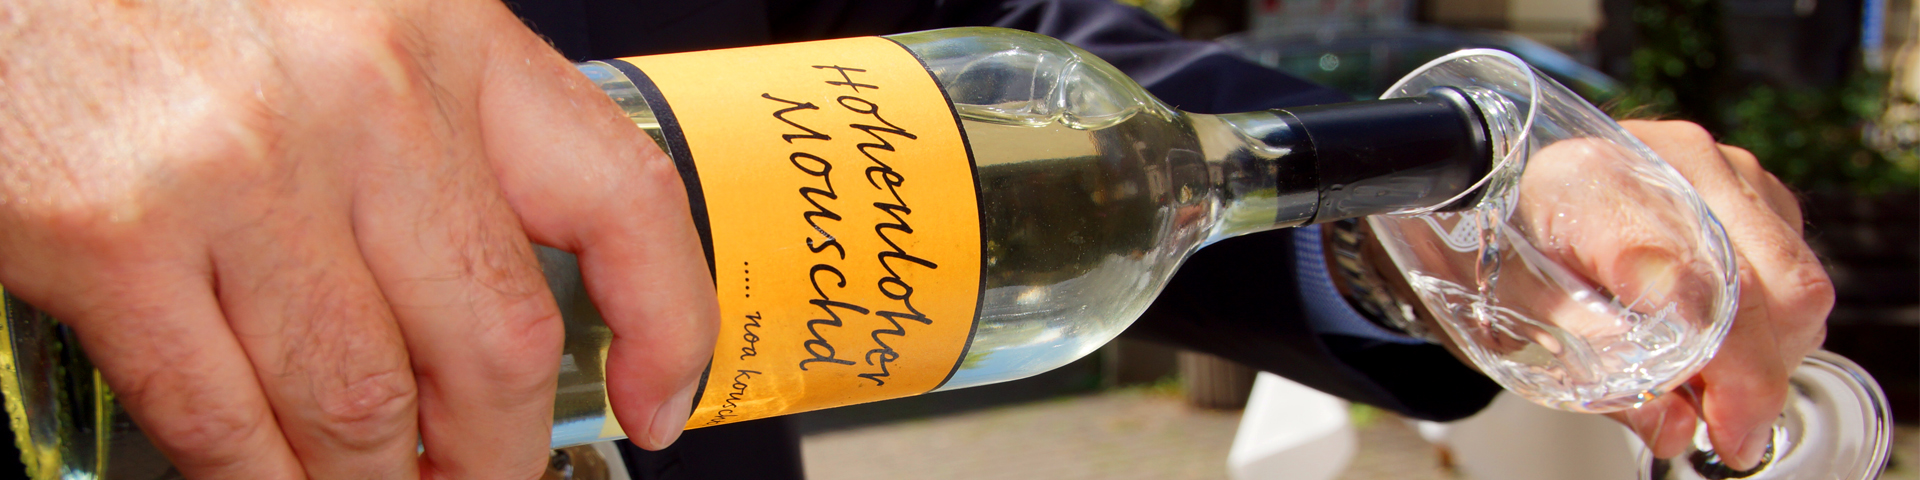 Eine Most-Flasche mit gelbem Etikett aus der ein Weinglas gefüllt wird, ist zu sehen.